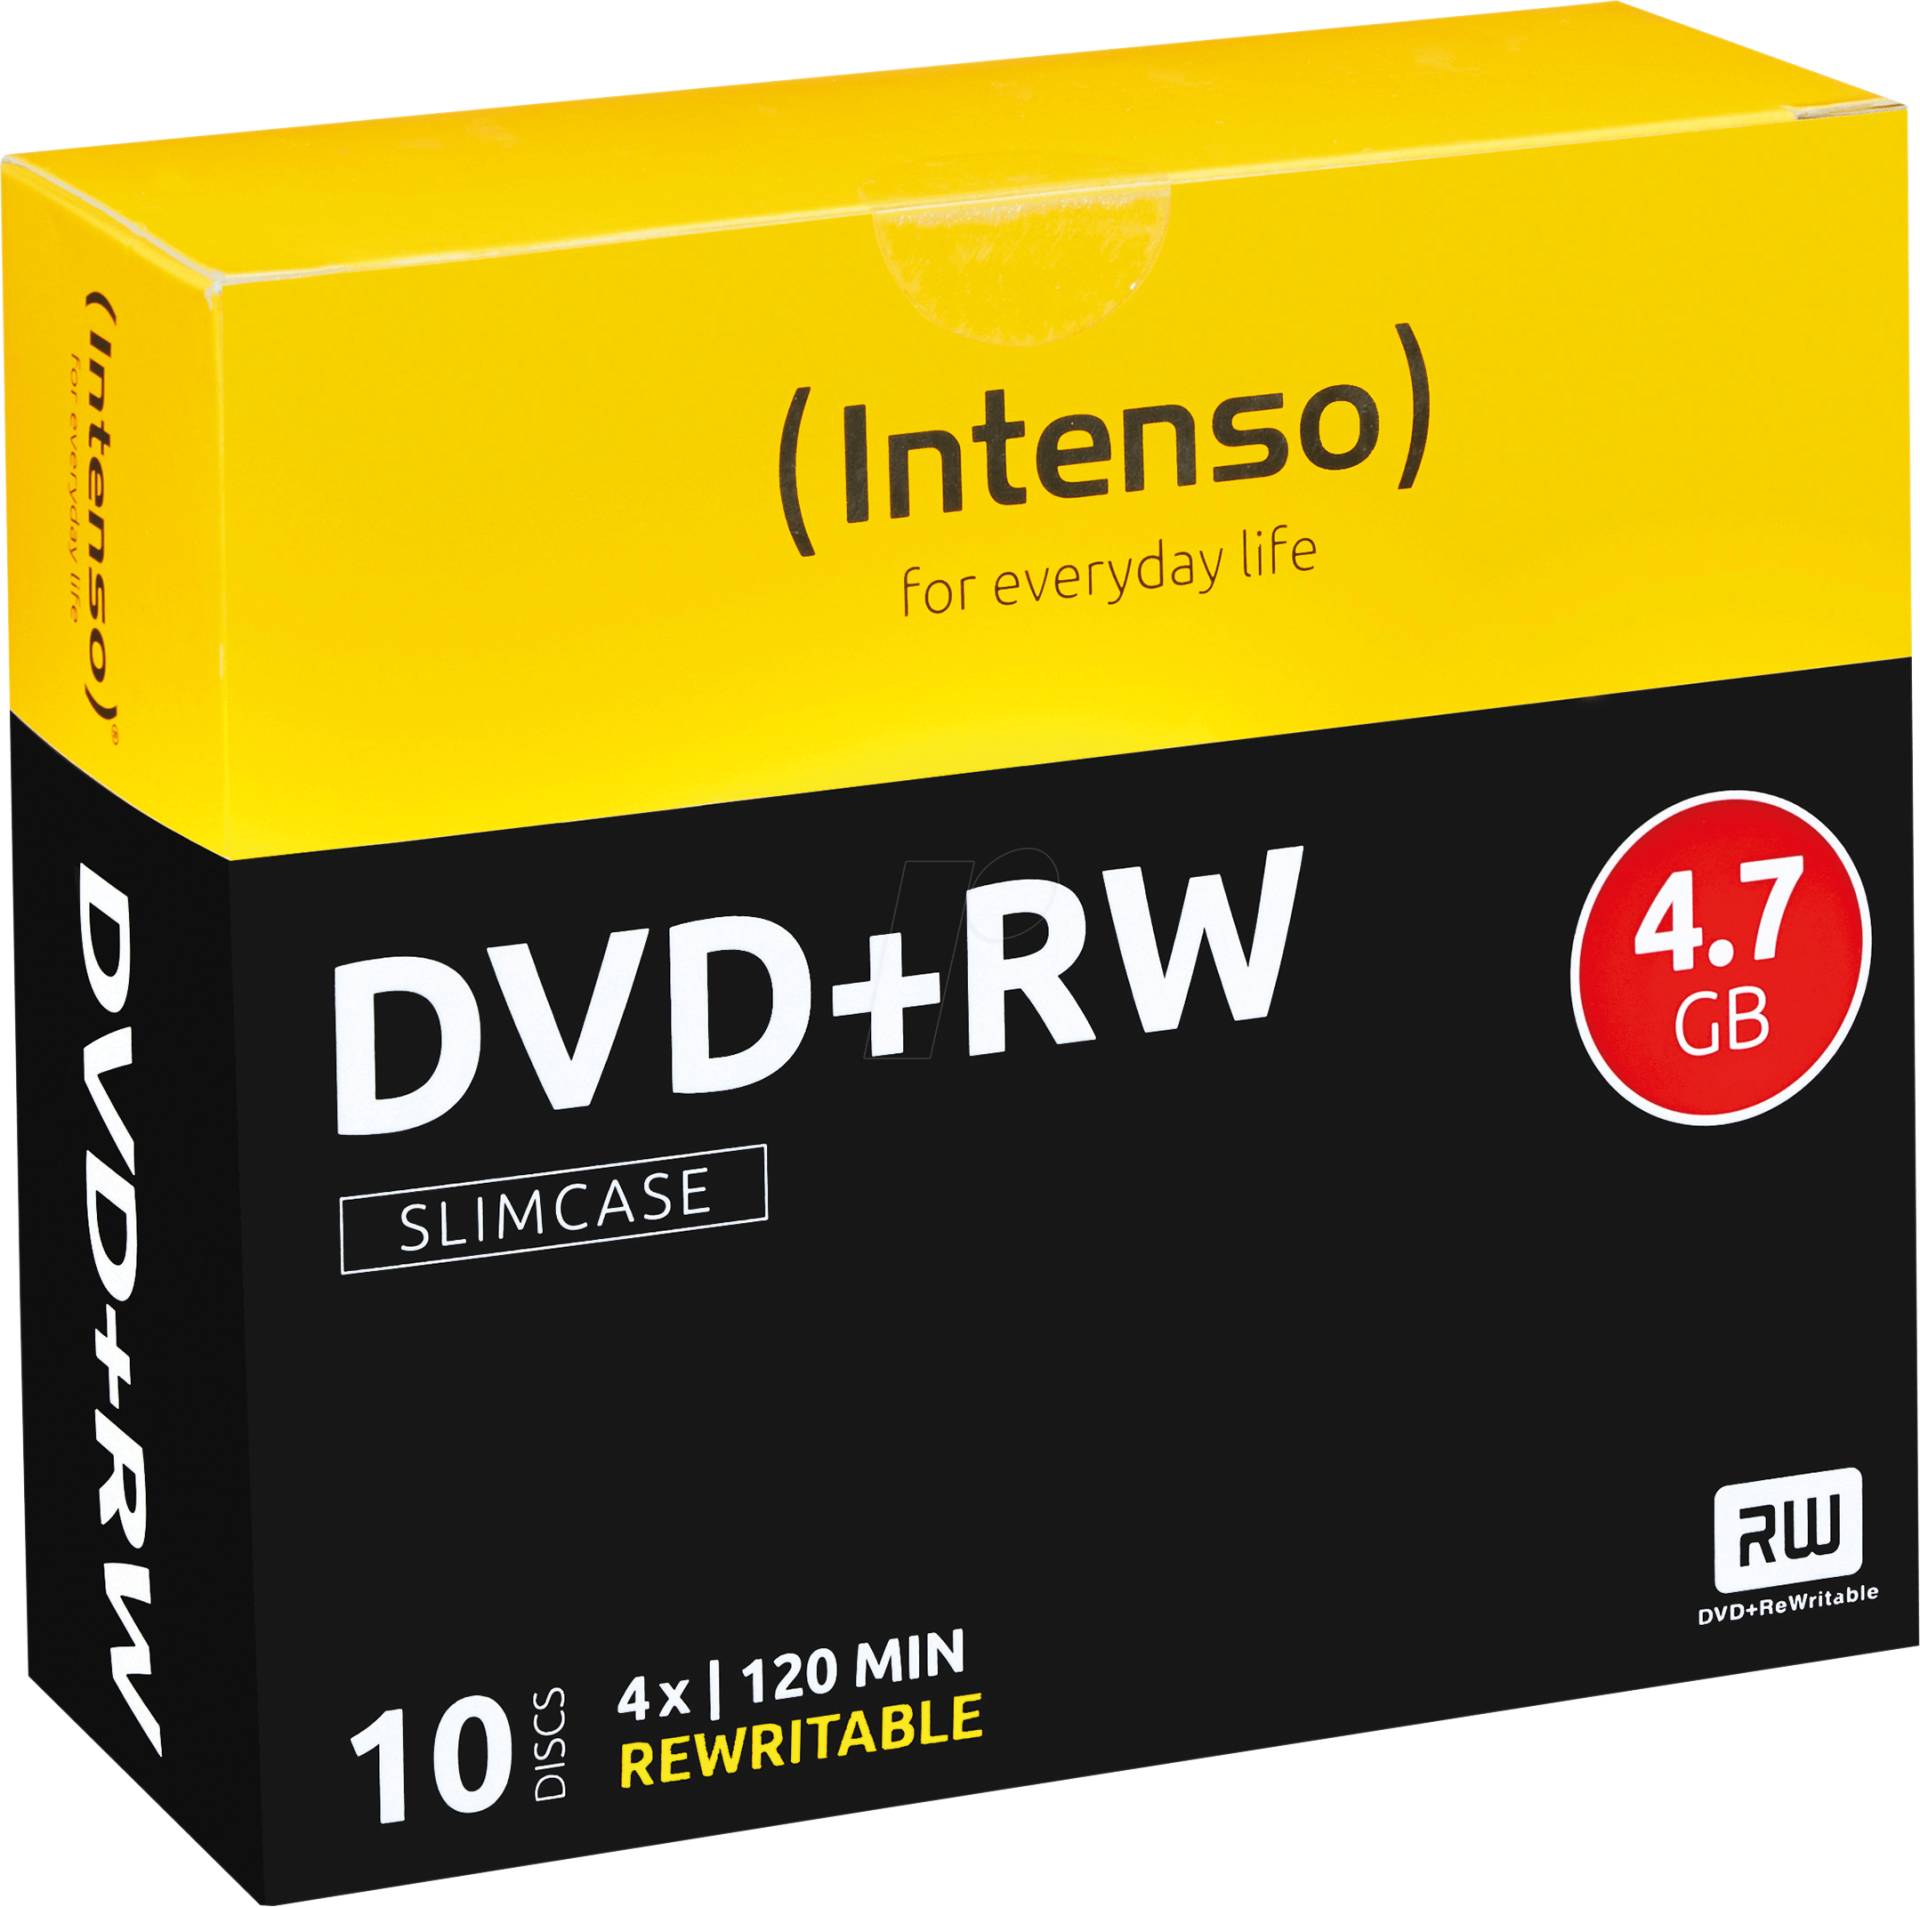 DVD+RW4,7 INT10 - Intenso DVD+RW 4,7GB, 10er-SlimCase von Intenso